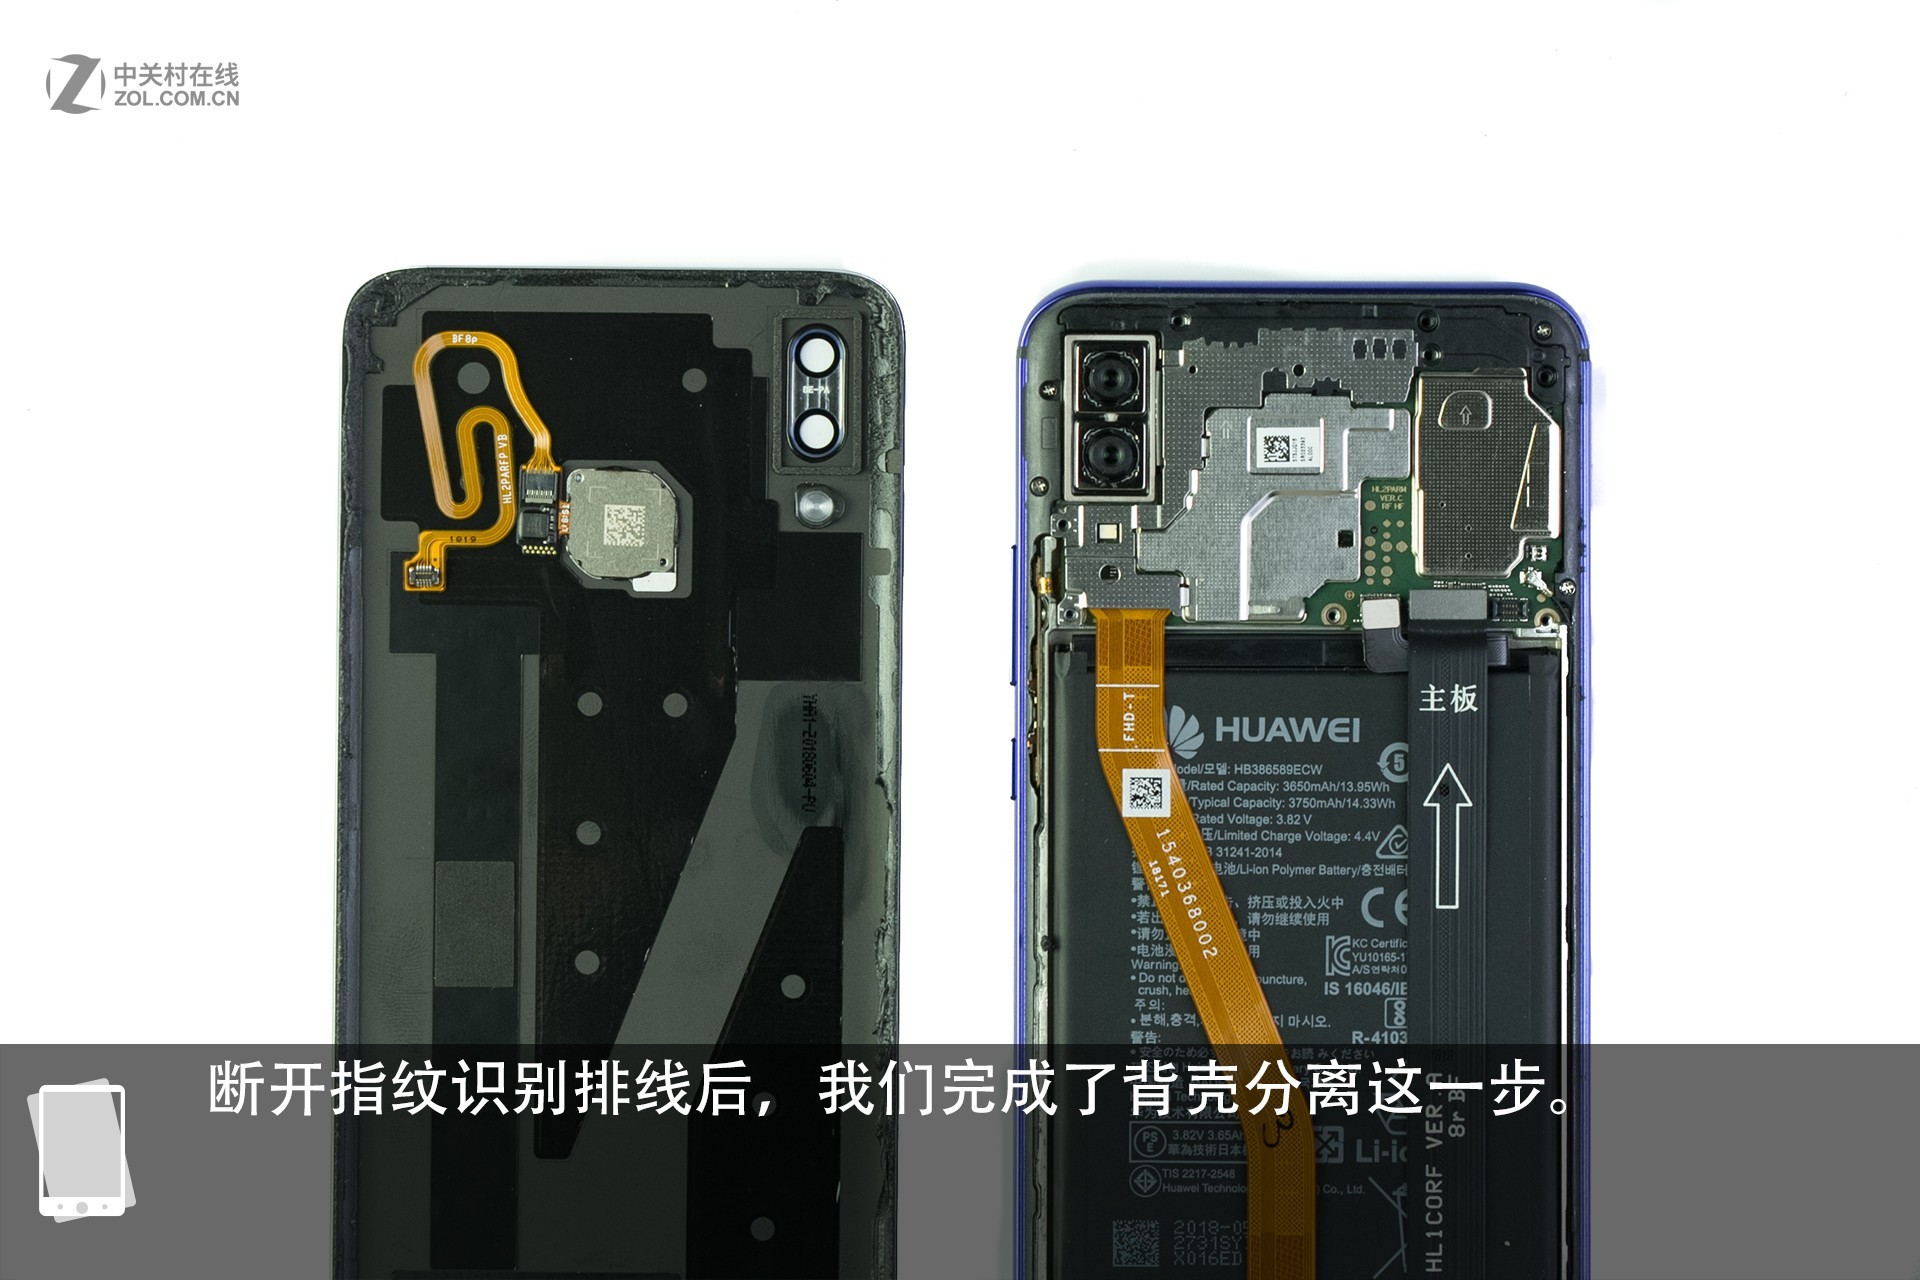 Huawei Nova 3 Teardown - MyFixGuide.com